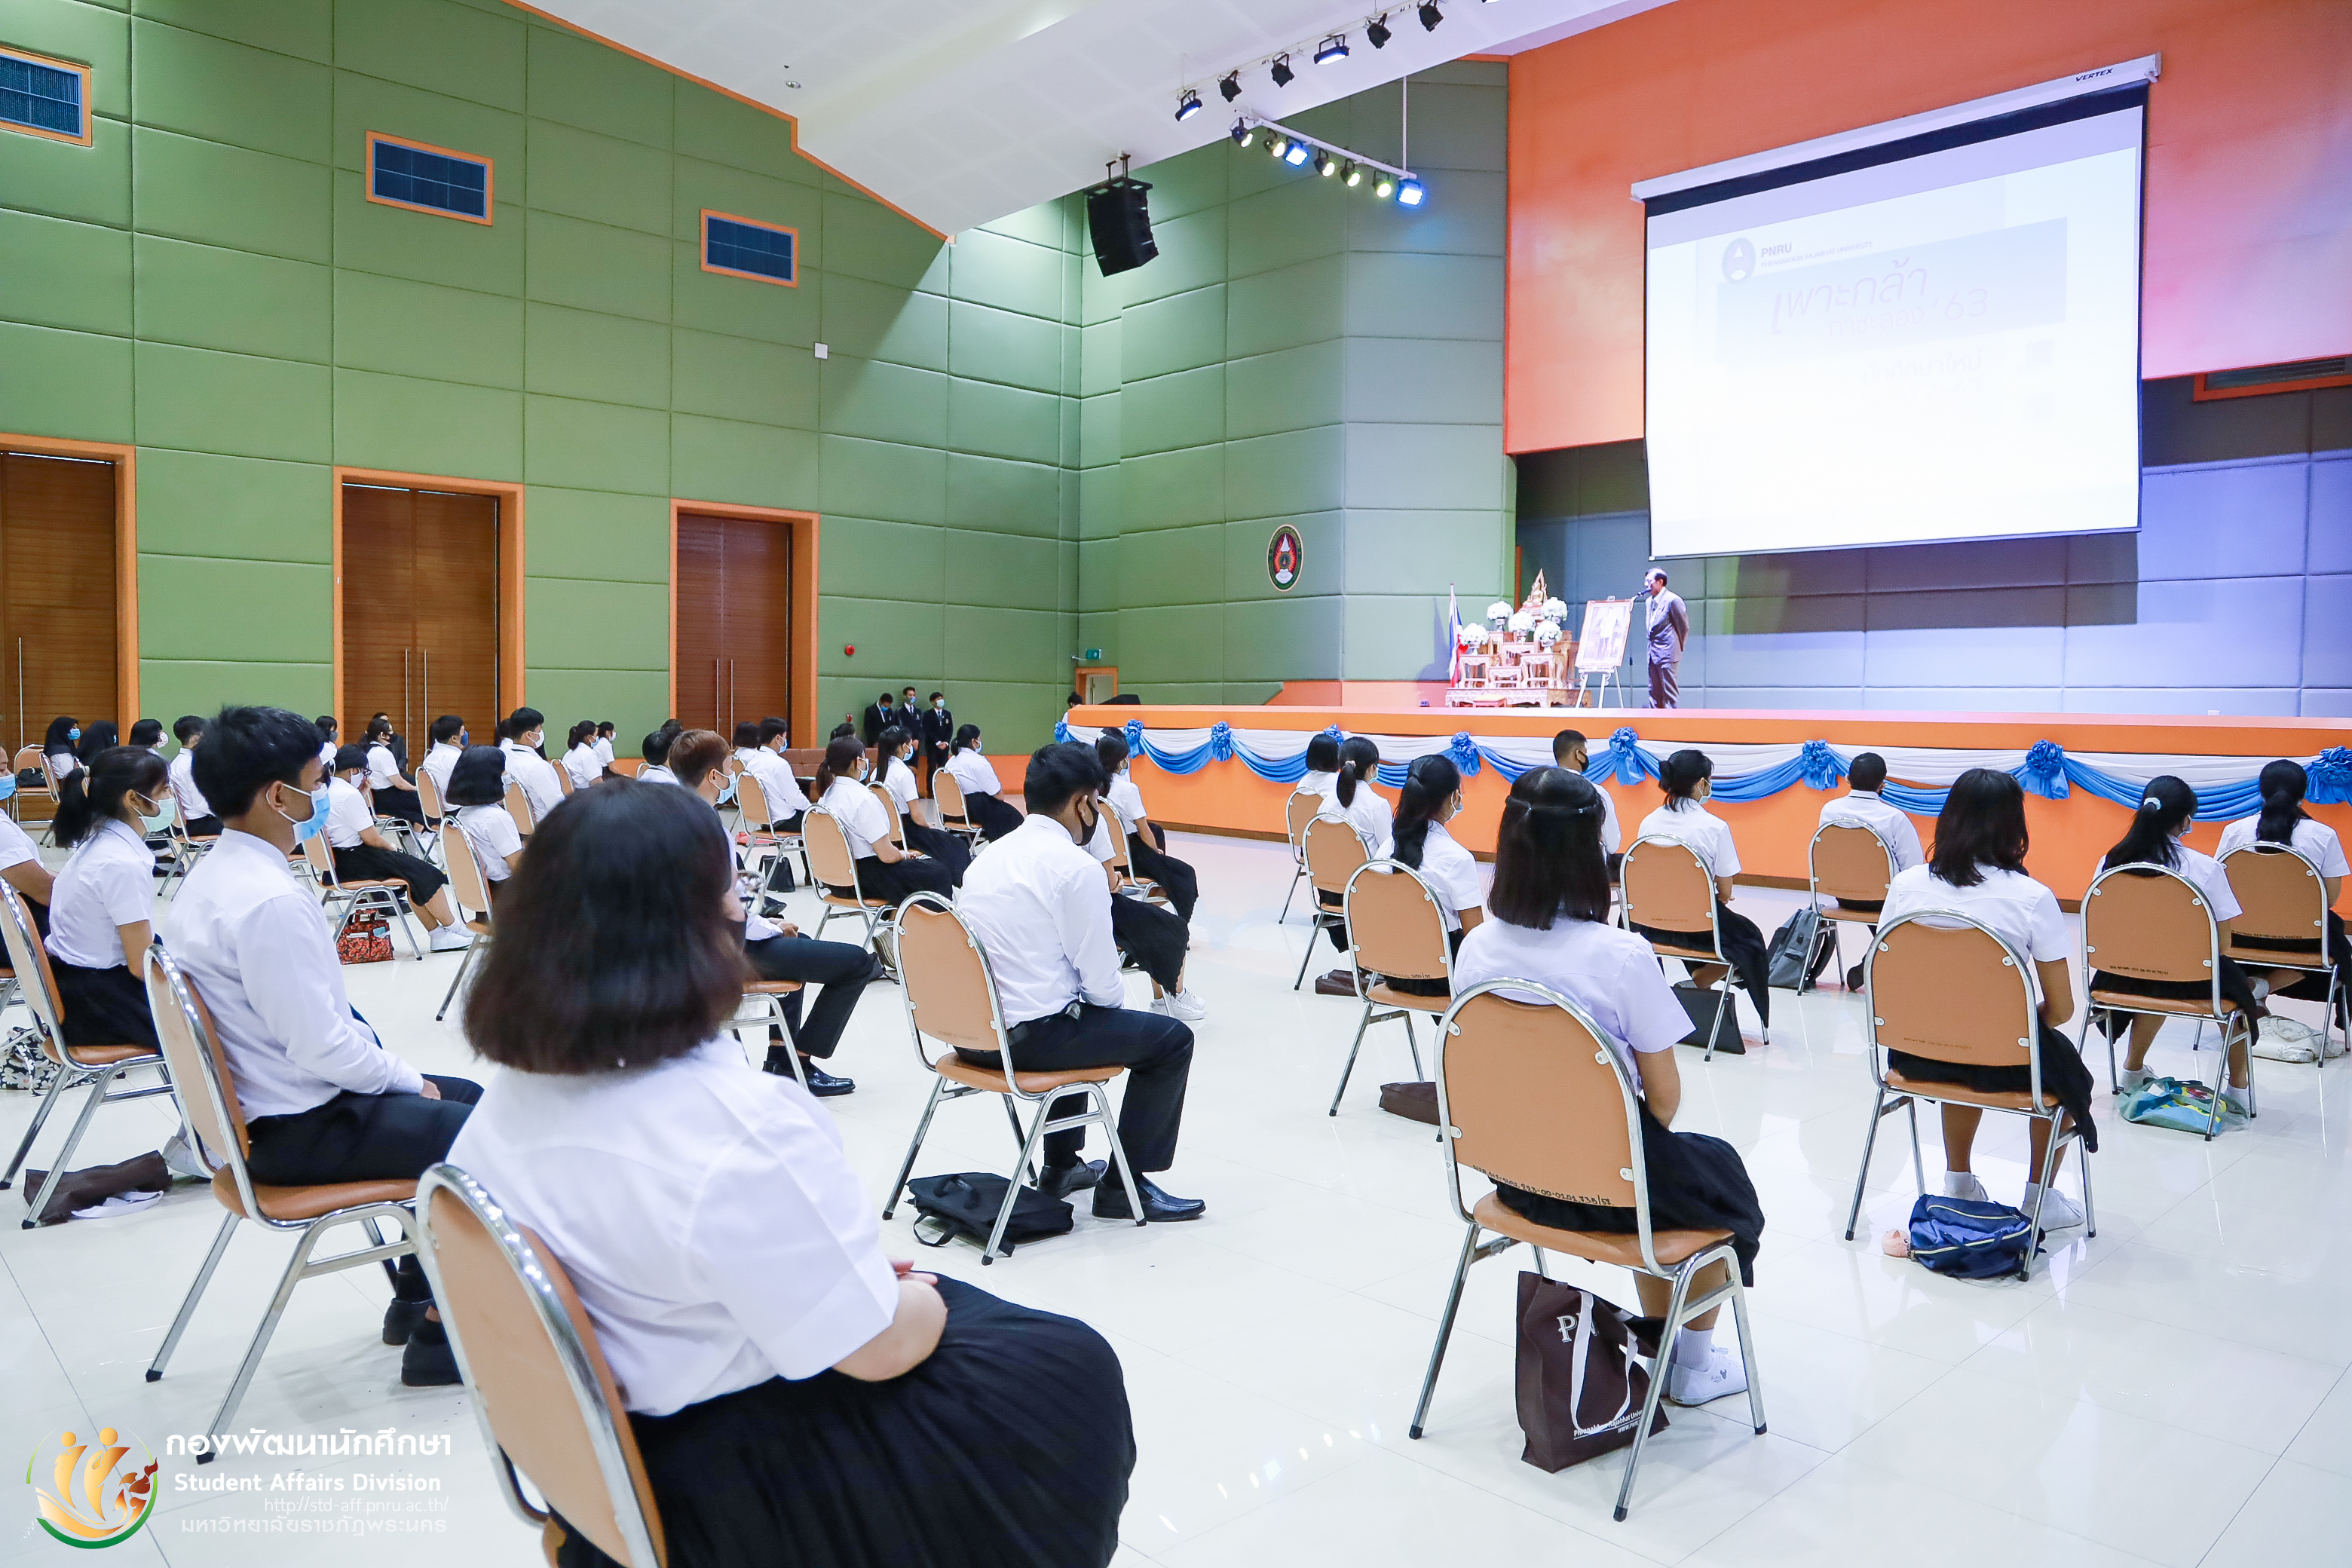 8 กรกฎาคม 2563 กองพัฒนานักศึกษา มหาวิทยาลัยราชภัฏพระนคร จัดให้มีการจัดกิจกรรมเพาะกล้ากาซะลอง 63 รุ่นที่ 1 ประจำปีการศึกษา 2563 ณ หอประชุมภัทรมหาราช